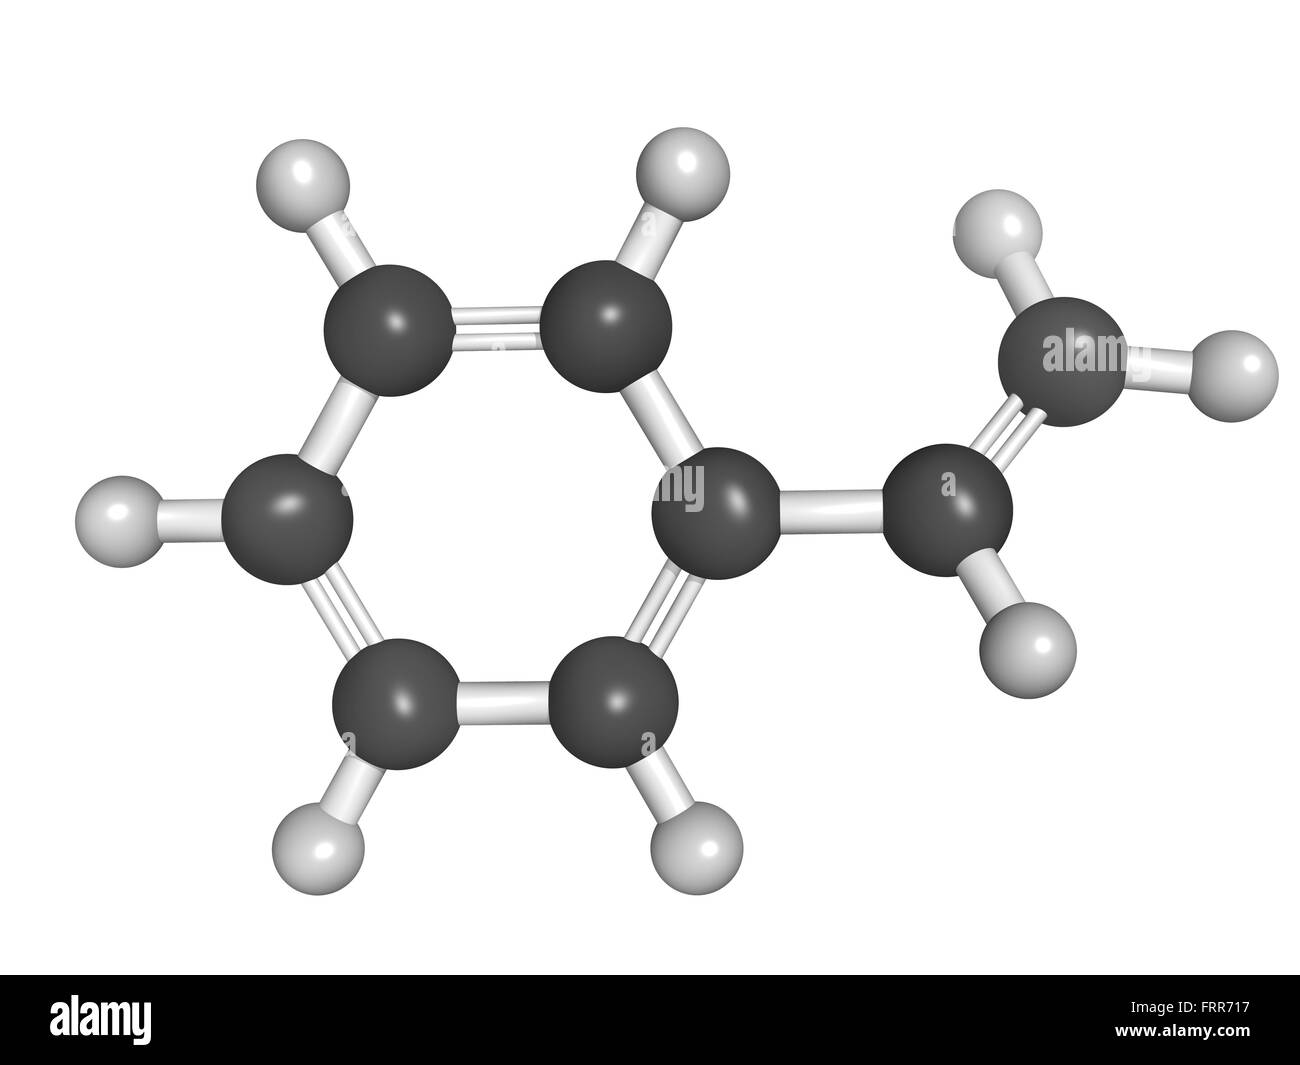 Chemische Struktur von Styrol (Vinyl Benzol), Polystyrol (PS) Kunststoff  Baustein Stockfotografie - Alamy